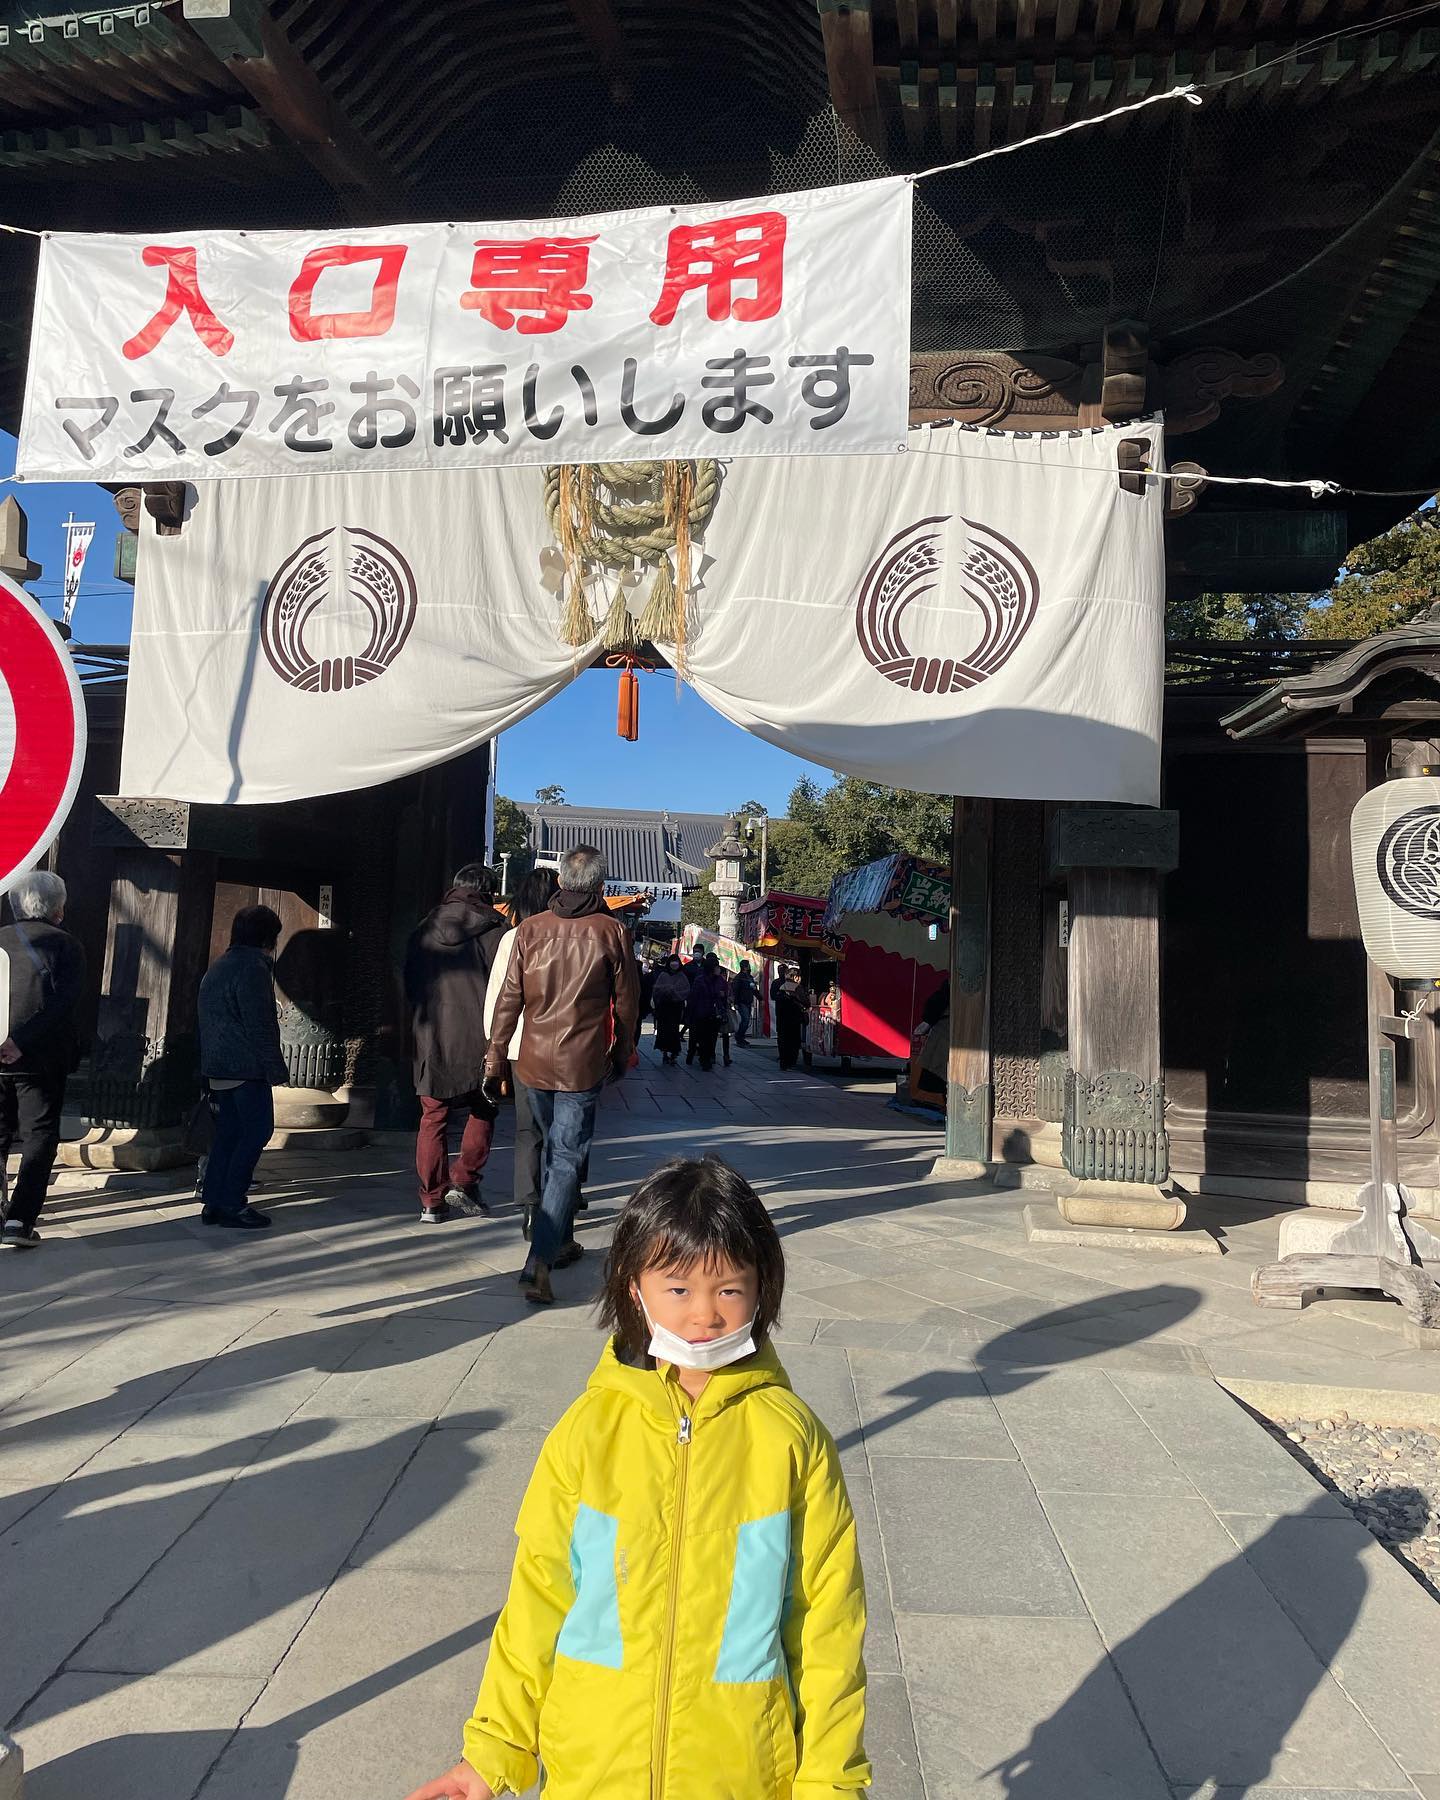 日曜日に初詣で豊川稲荷に行ってきました。久しぶりのお出かけで楽しそう。
最後の写真は娘の悪ふざけw